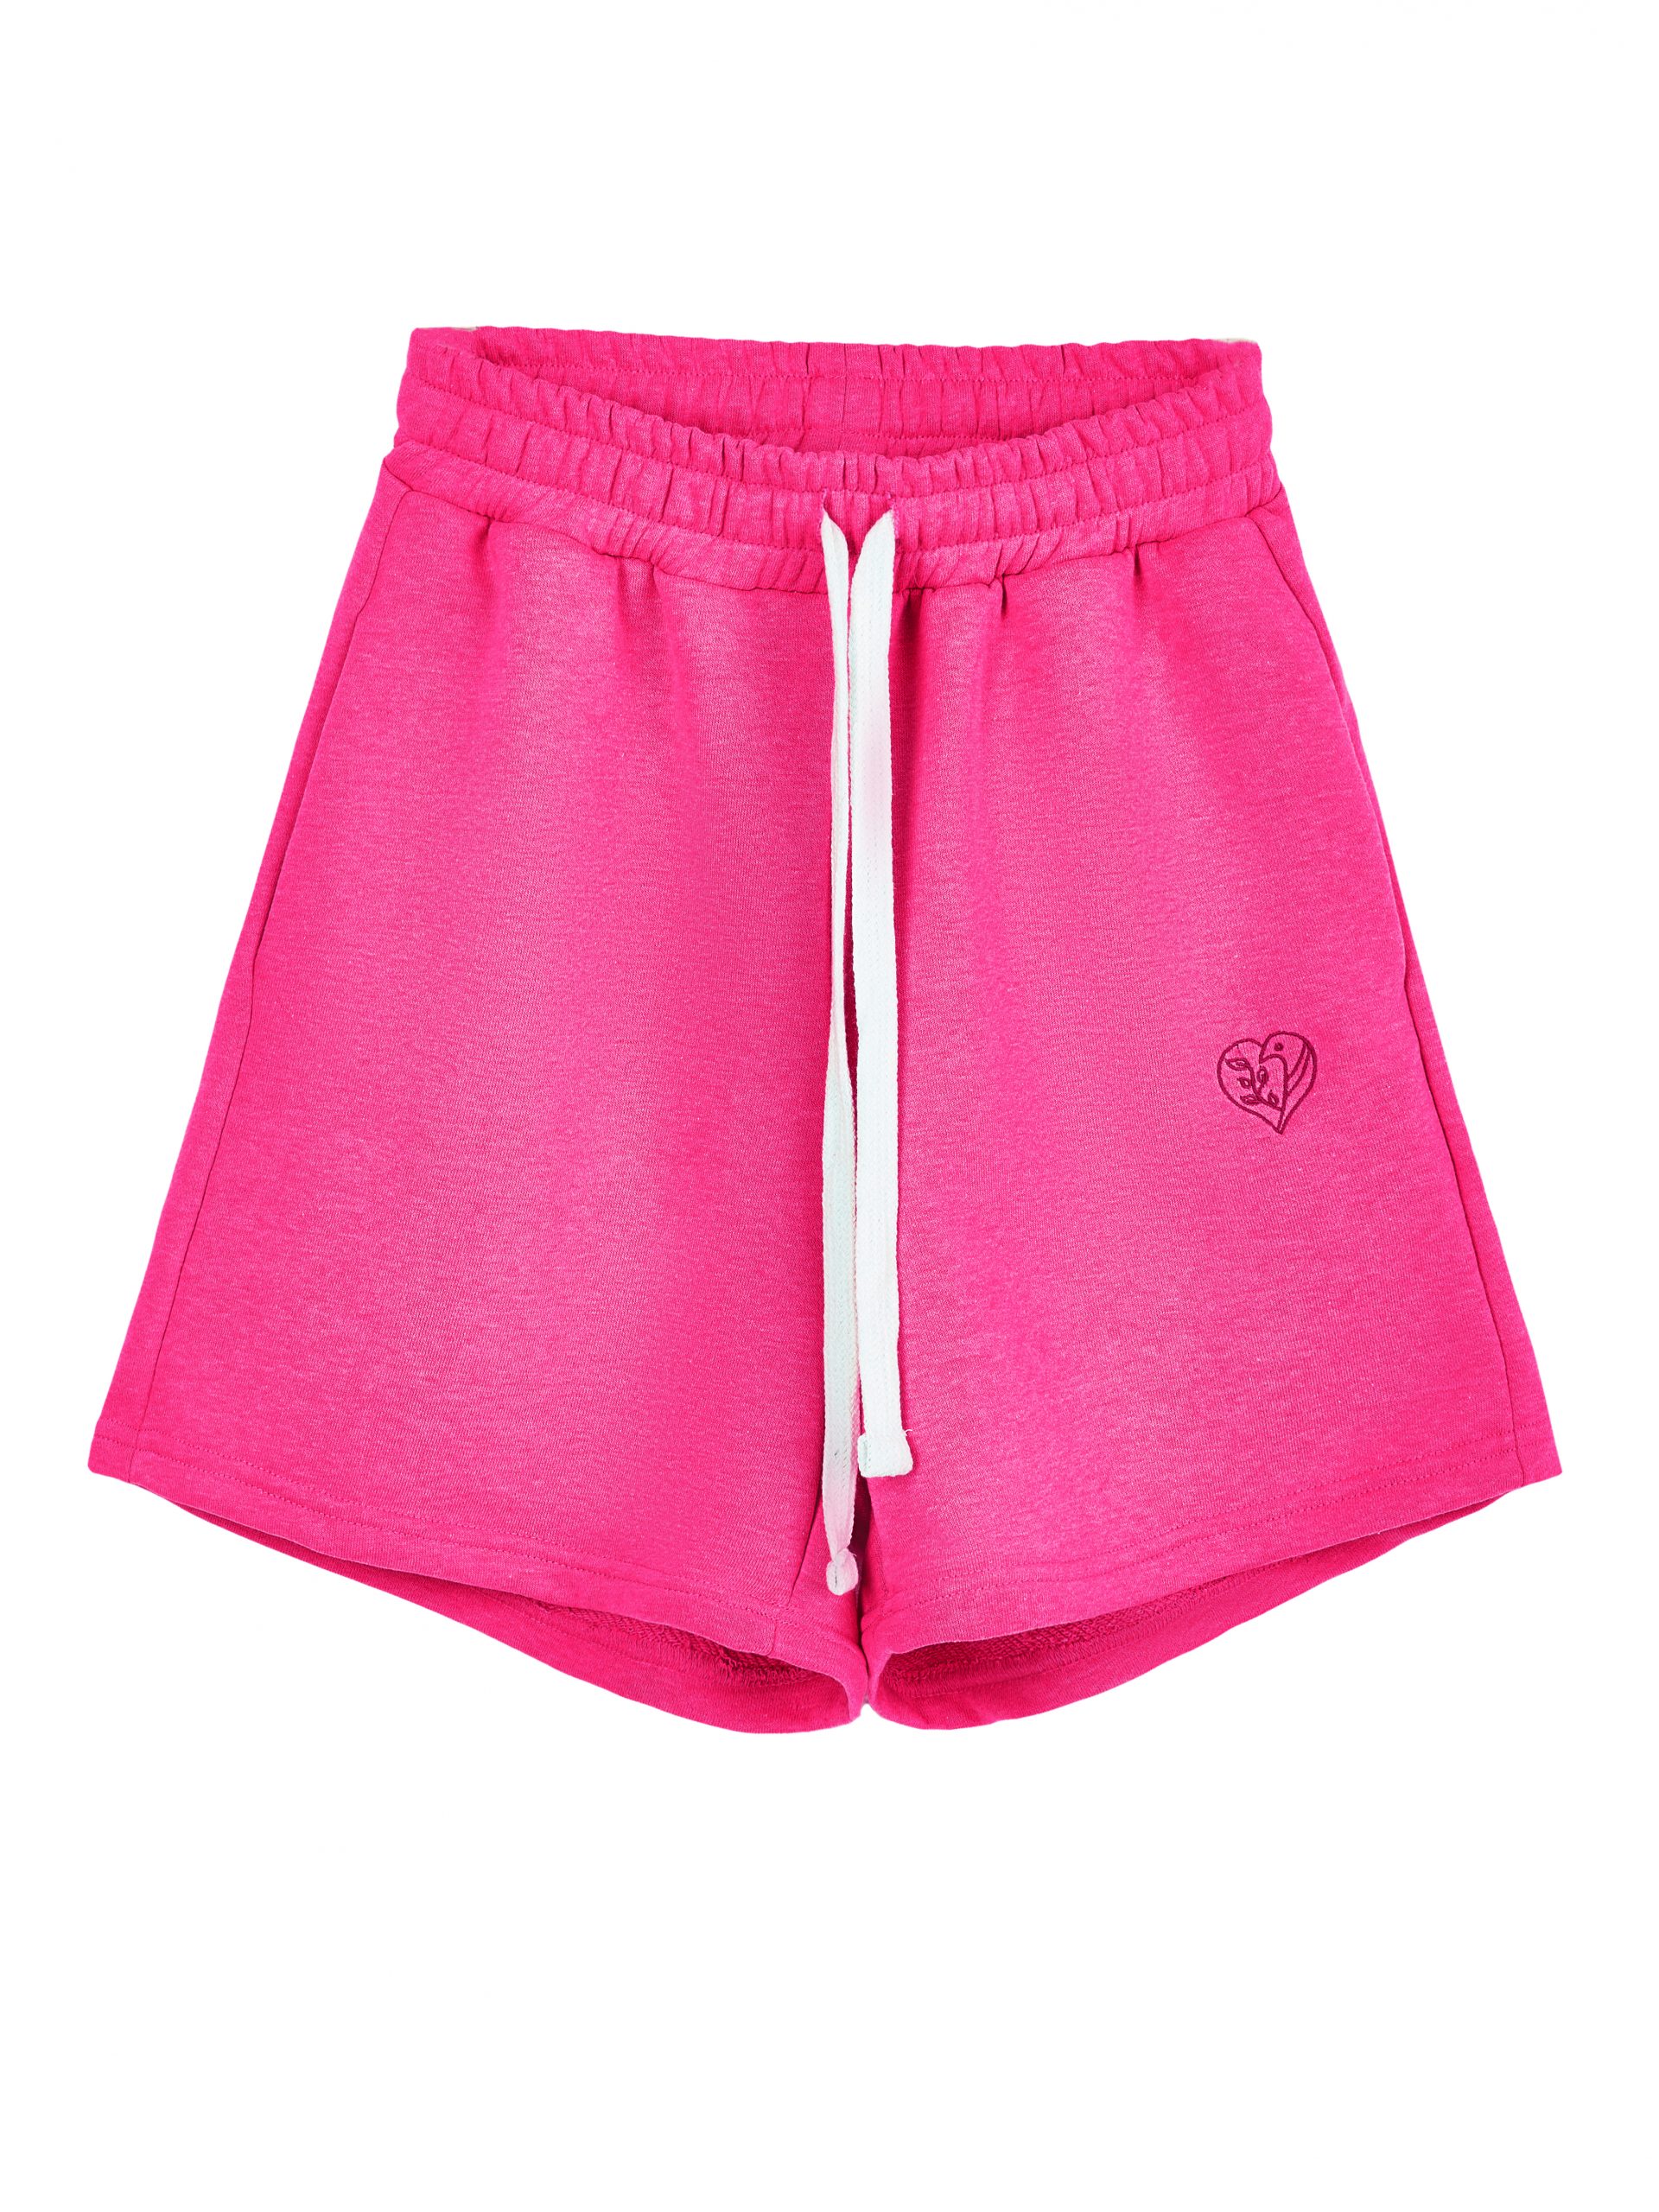 Повседневные шорты женские Atmosphere Summer vibes Color розовые 2XL